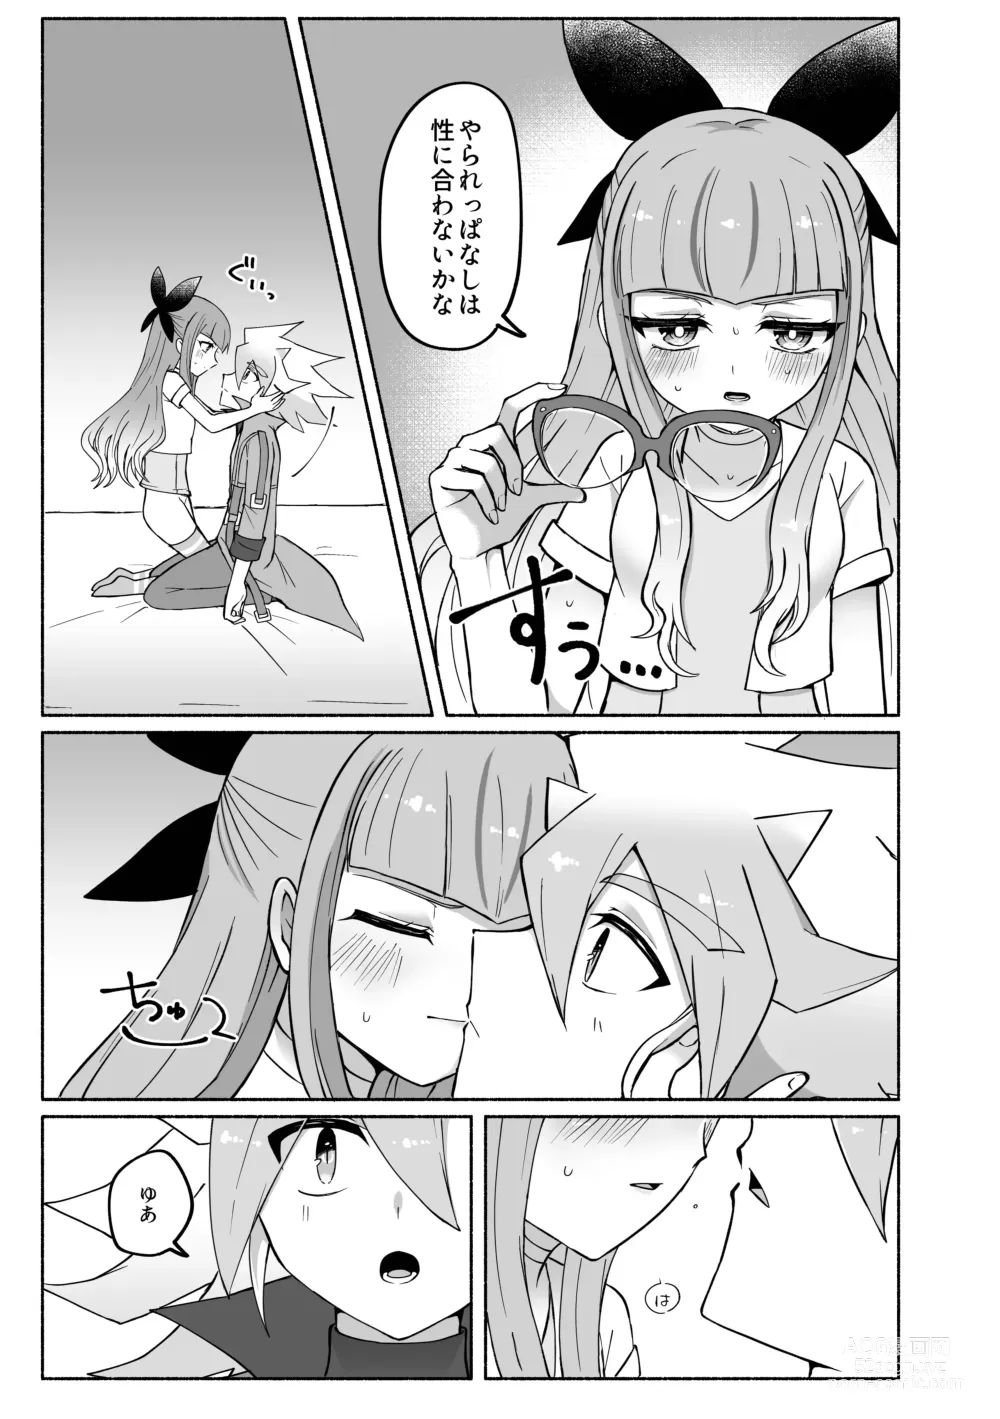 Page 5 of doujinshi Yudi yu a manga